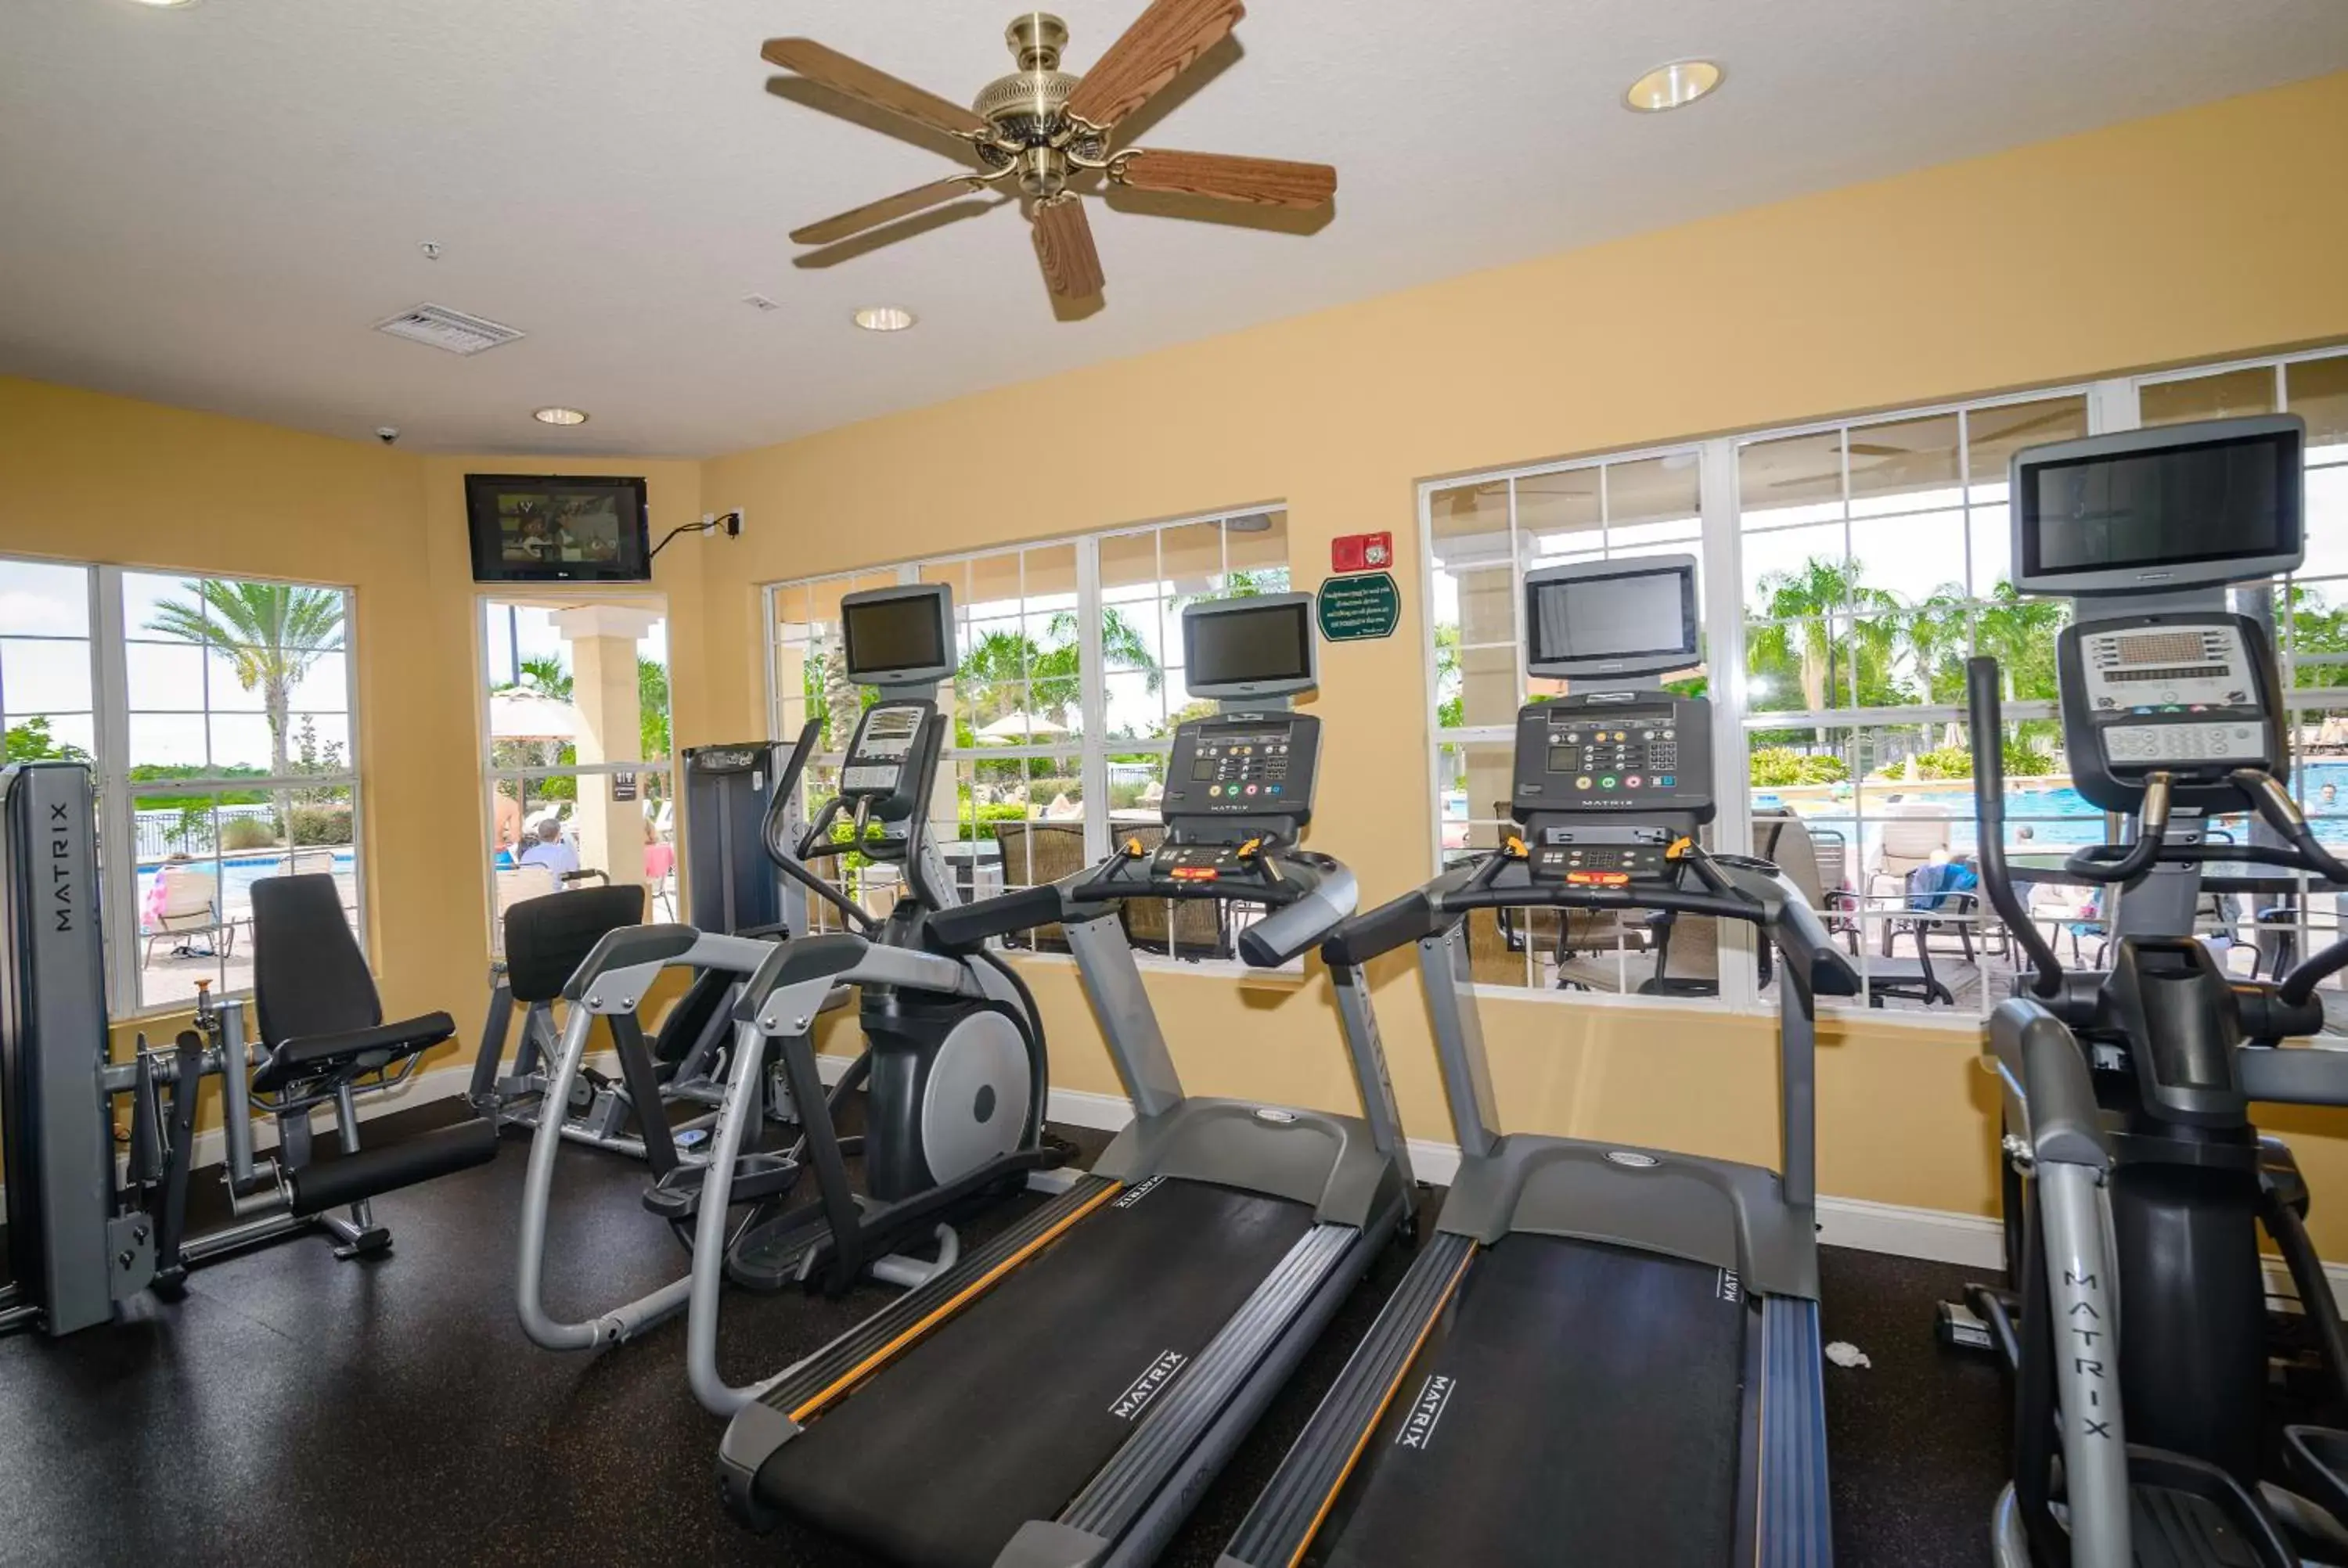 Fitness centre/facilities, Fitness Center/Facilities in Orlando Escape